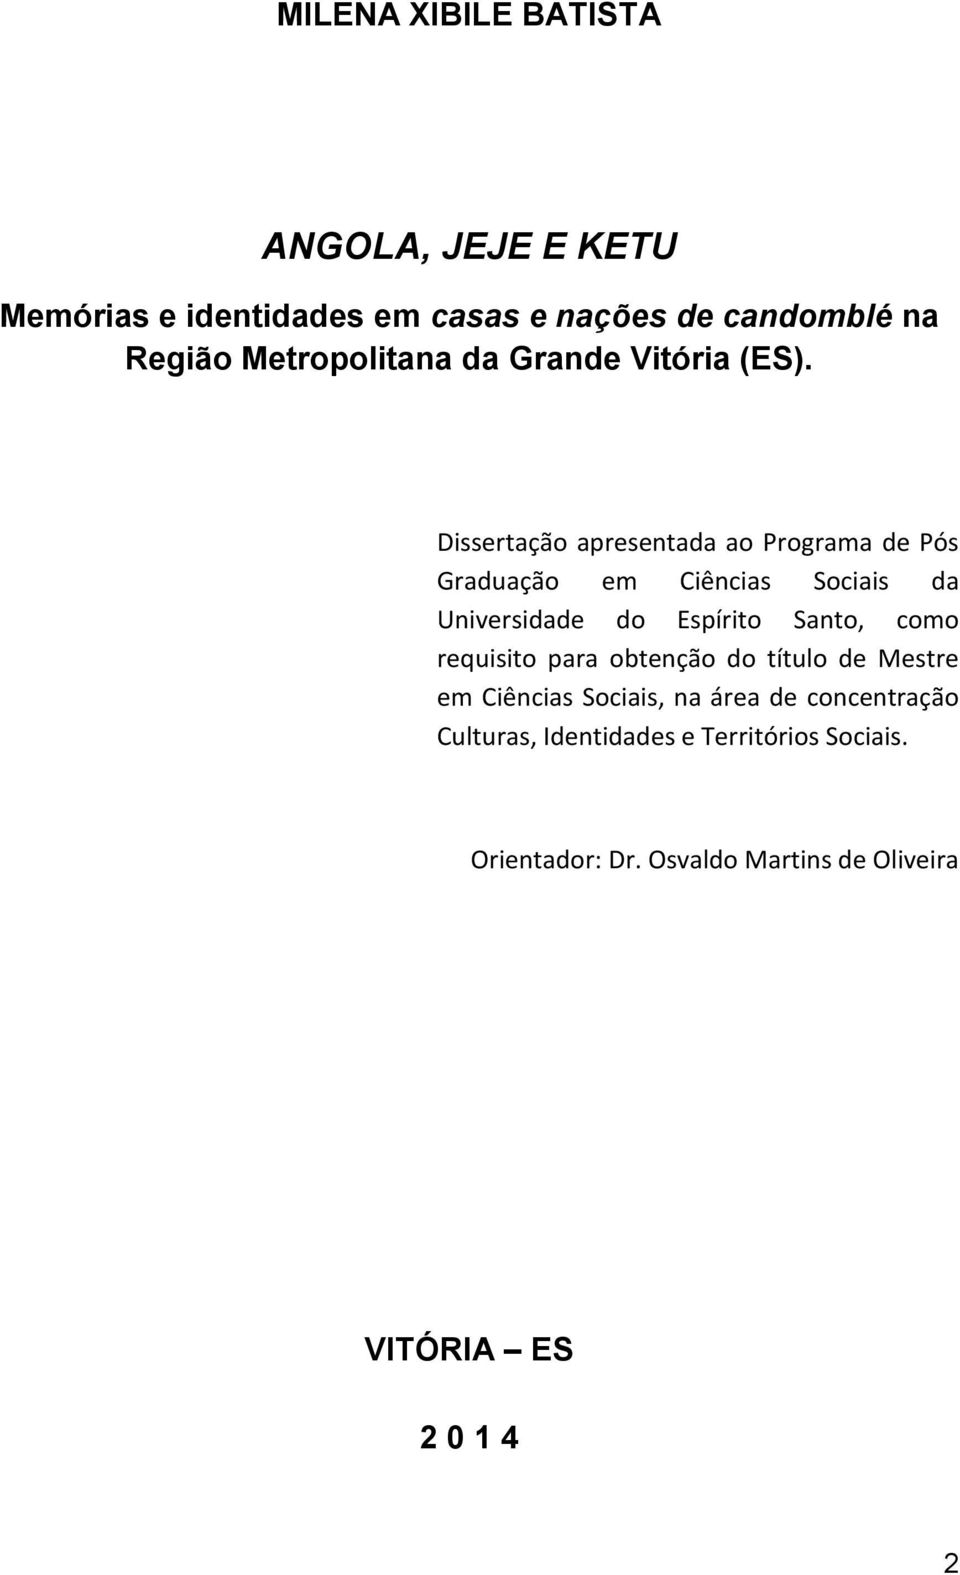 Dissertação apresentada ao Programa de Pós Graduação em Ciências Sociais da Universidade do Espírito Santo, como